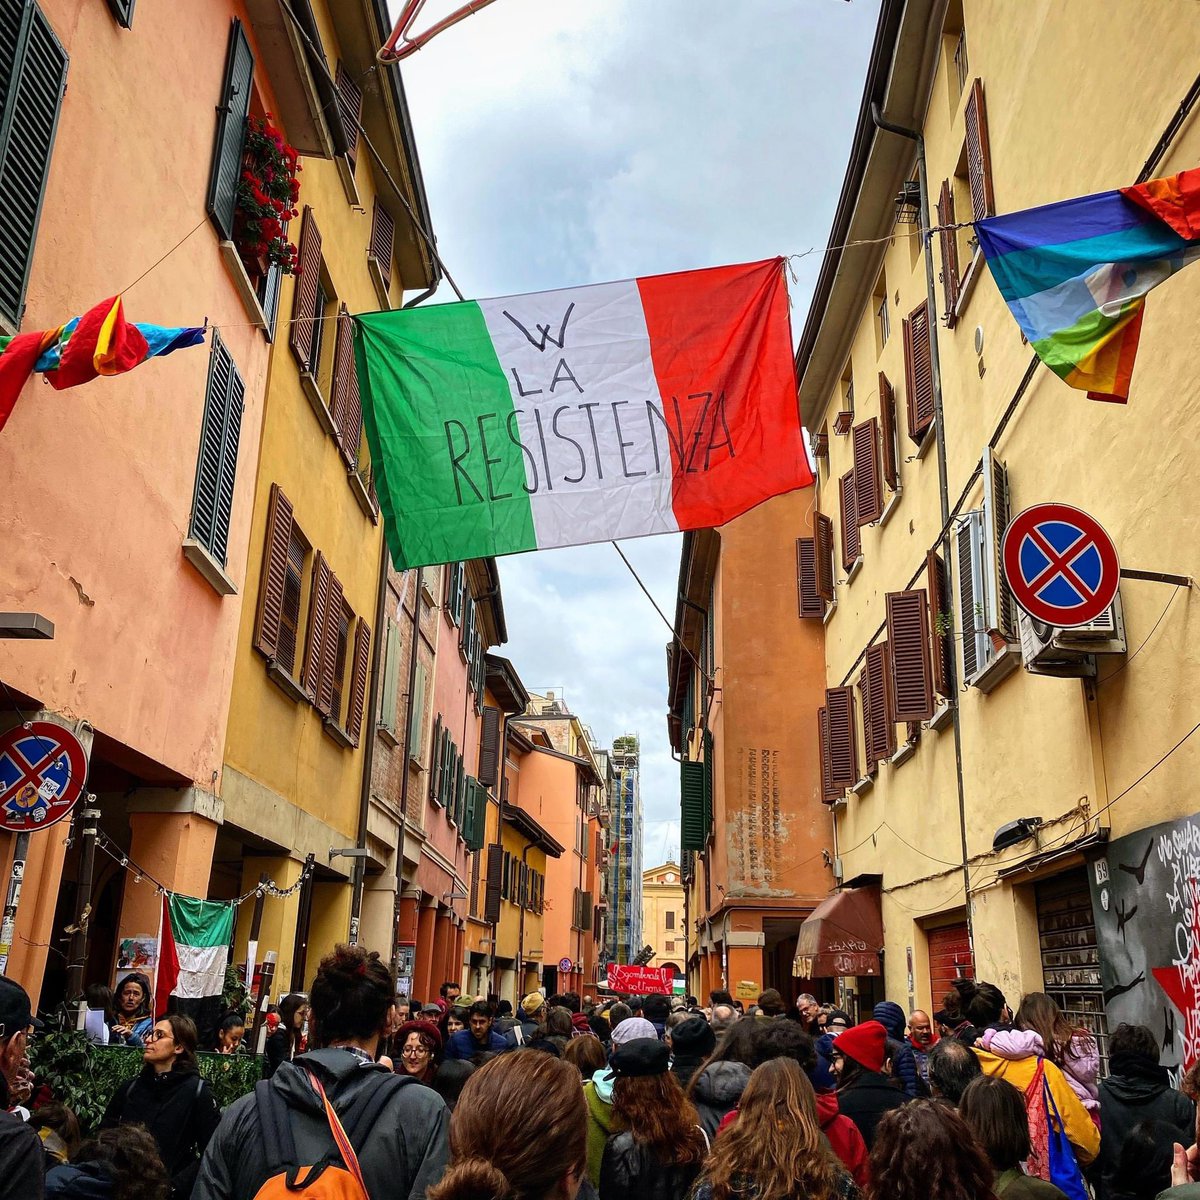 Viva la Resistenza! Buon 25 Aprile! #25aprile #Bologna